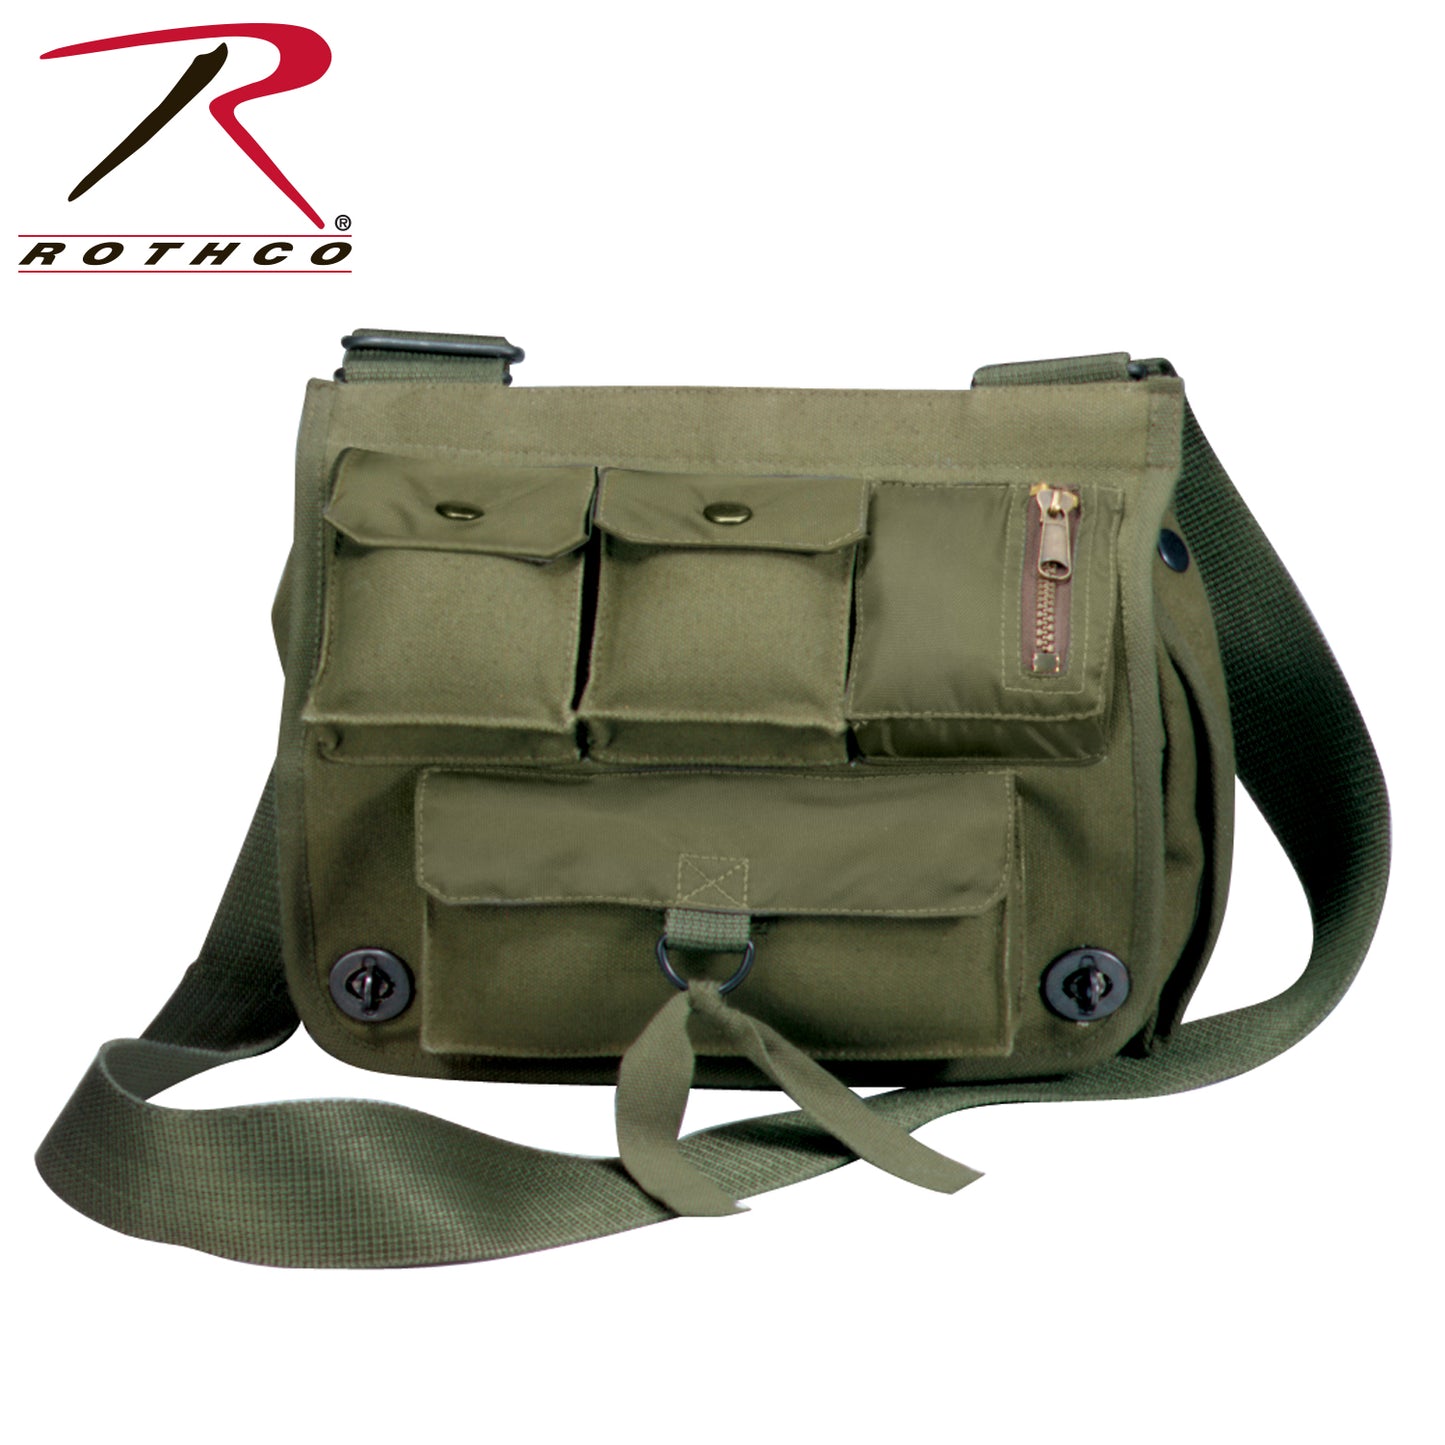 Milspec Venturer Survivor Shoulder Bag Messenger & Shoulder Bags MilTac Tactical Military Outdoor Gear Australia